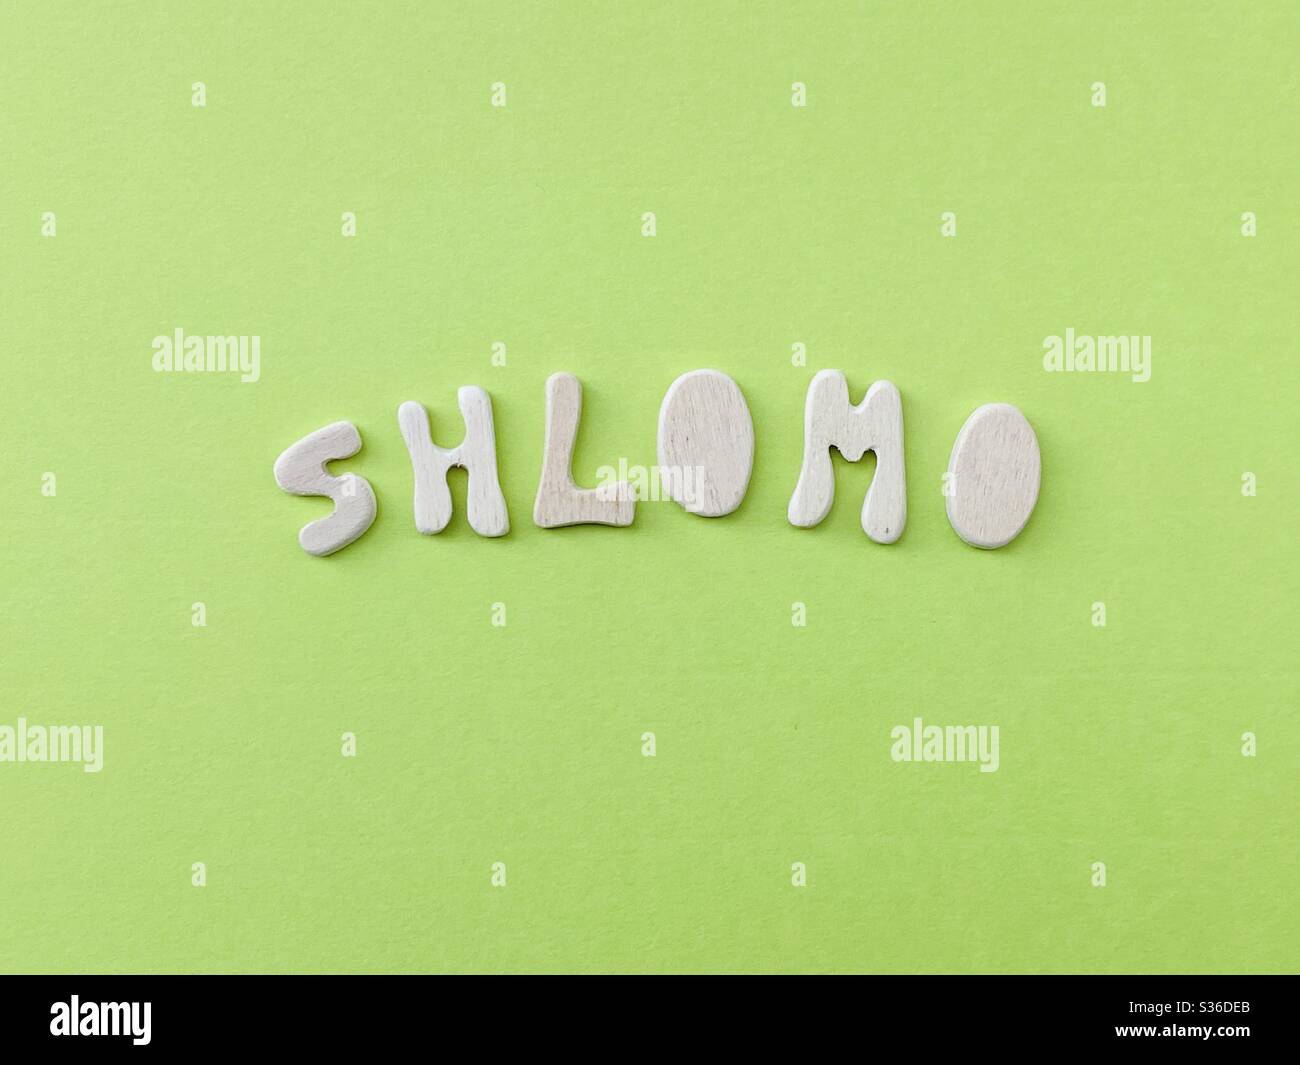 Shlomo, gemeinsame hebräische männliche Vorname mit handgefertigten Holzbuchstaben über grüne Farbe zusammengesetzt Stockfoto